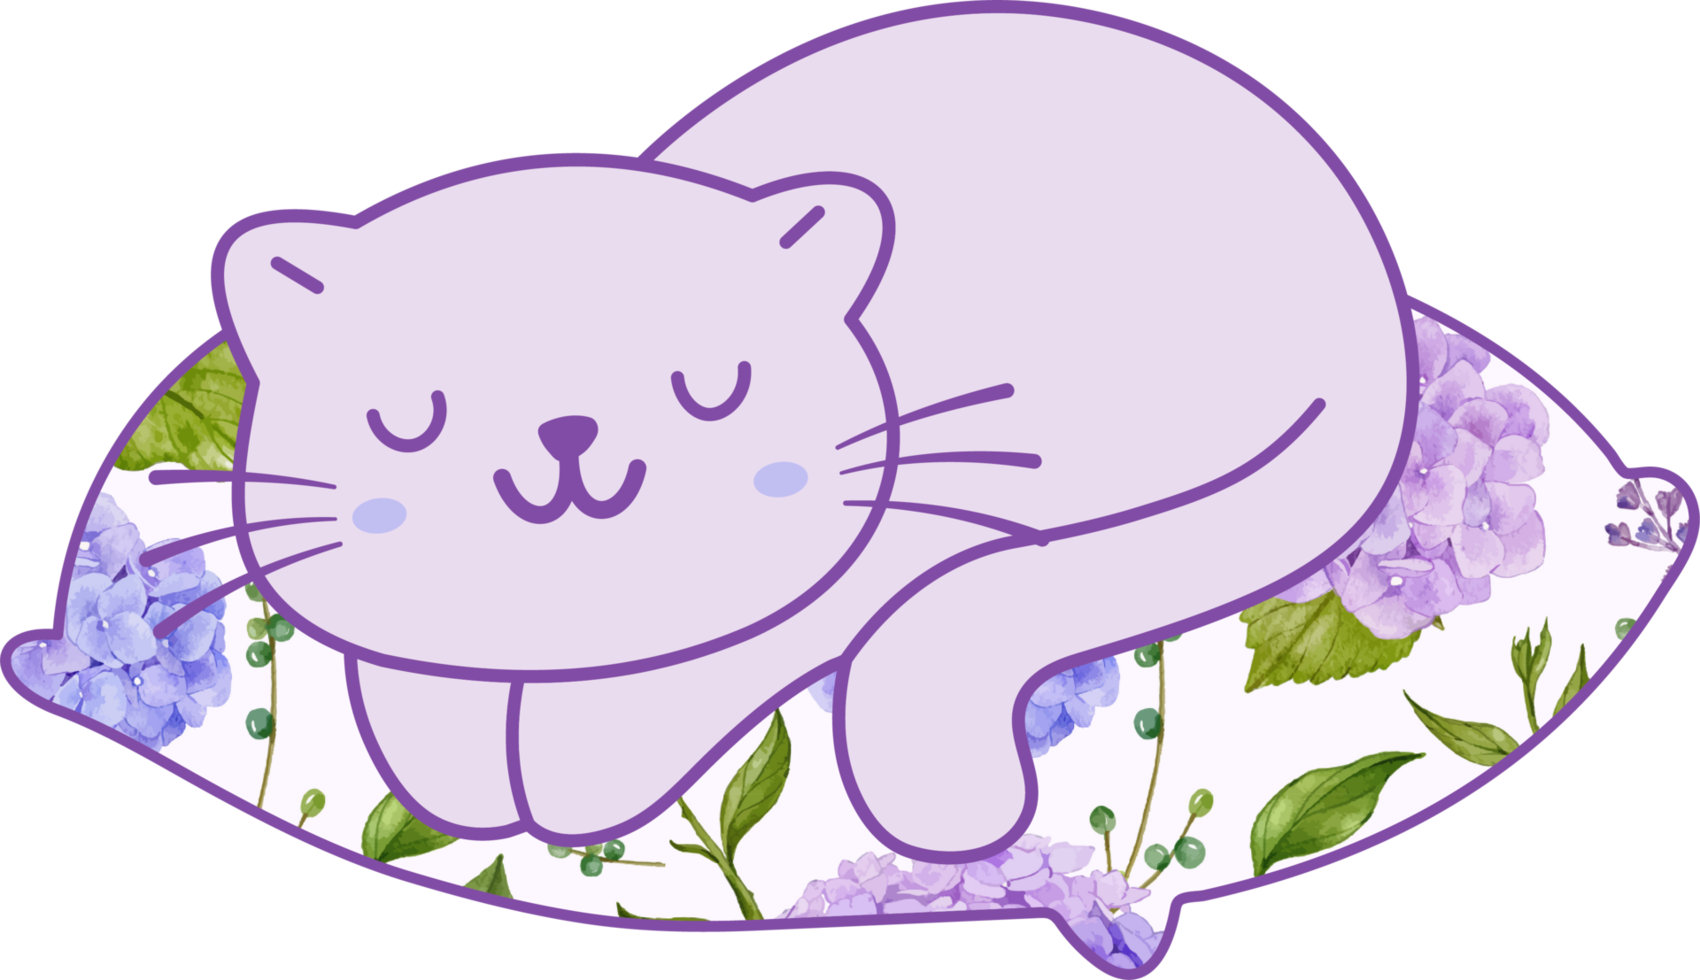 lindo gato durmiendo en una almohada colorida personaje animal de dibujos animados dibujados a mano. diseño de personajes de dibujos animados png